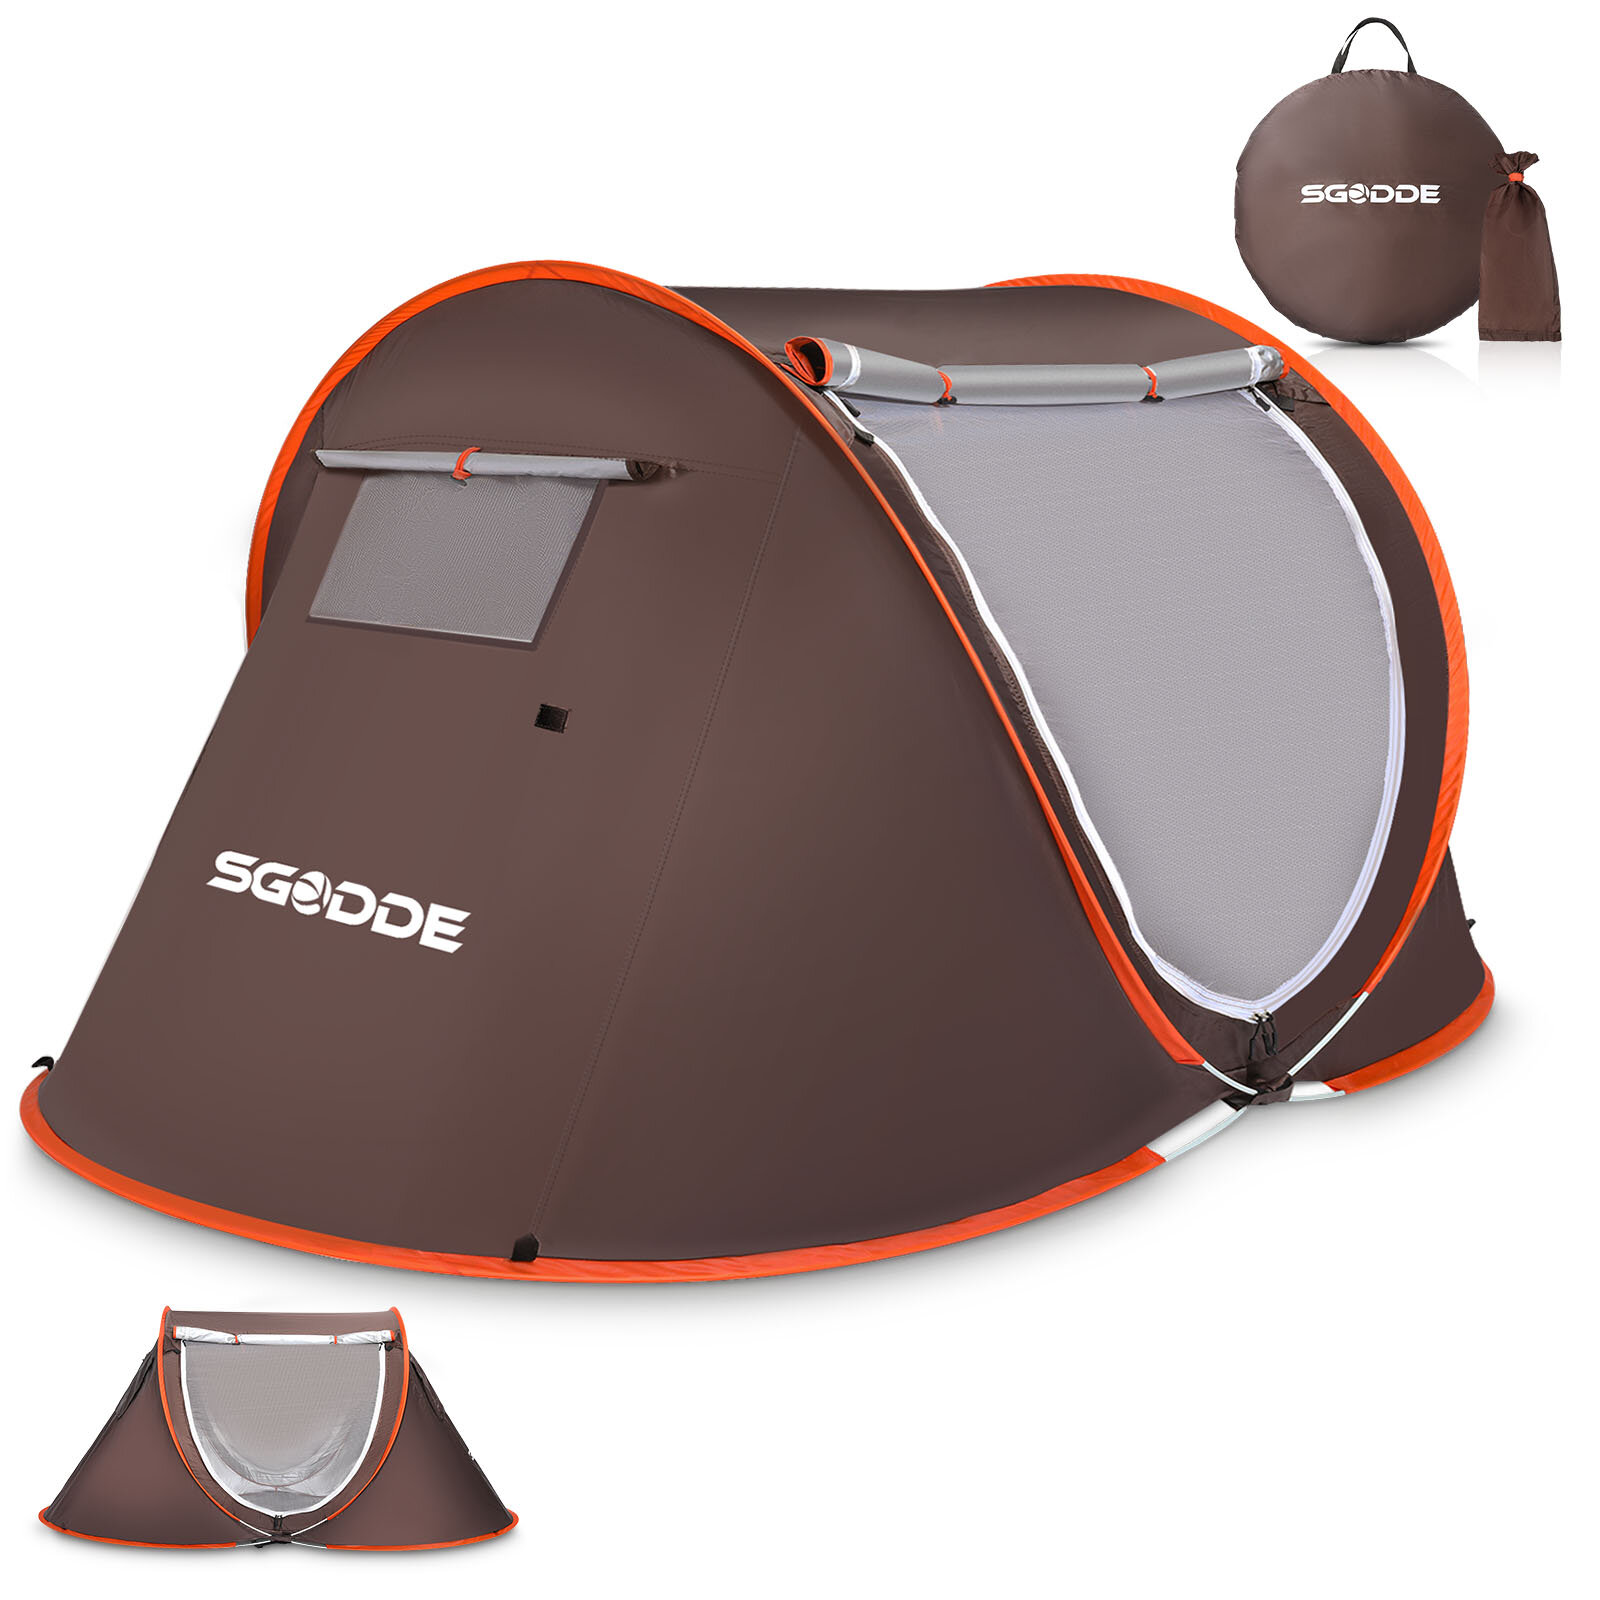 SGODDE 2-3 Kişilik Çadır Otomatik Kampçılık Çadır Anti UV Tente Çadır Su Geçirmez Outdoor Güneşlik